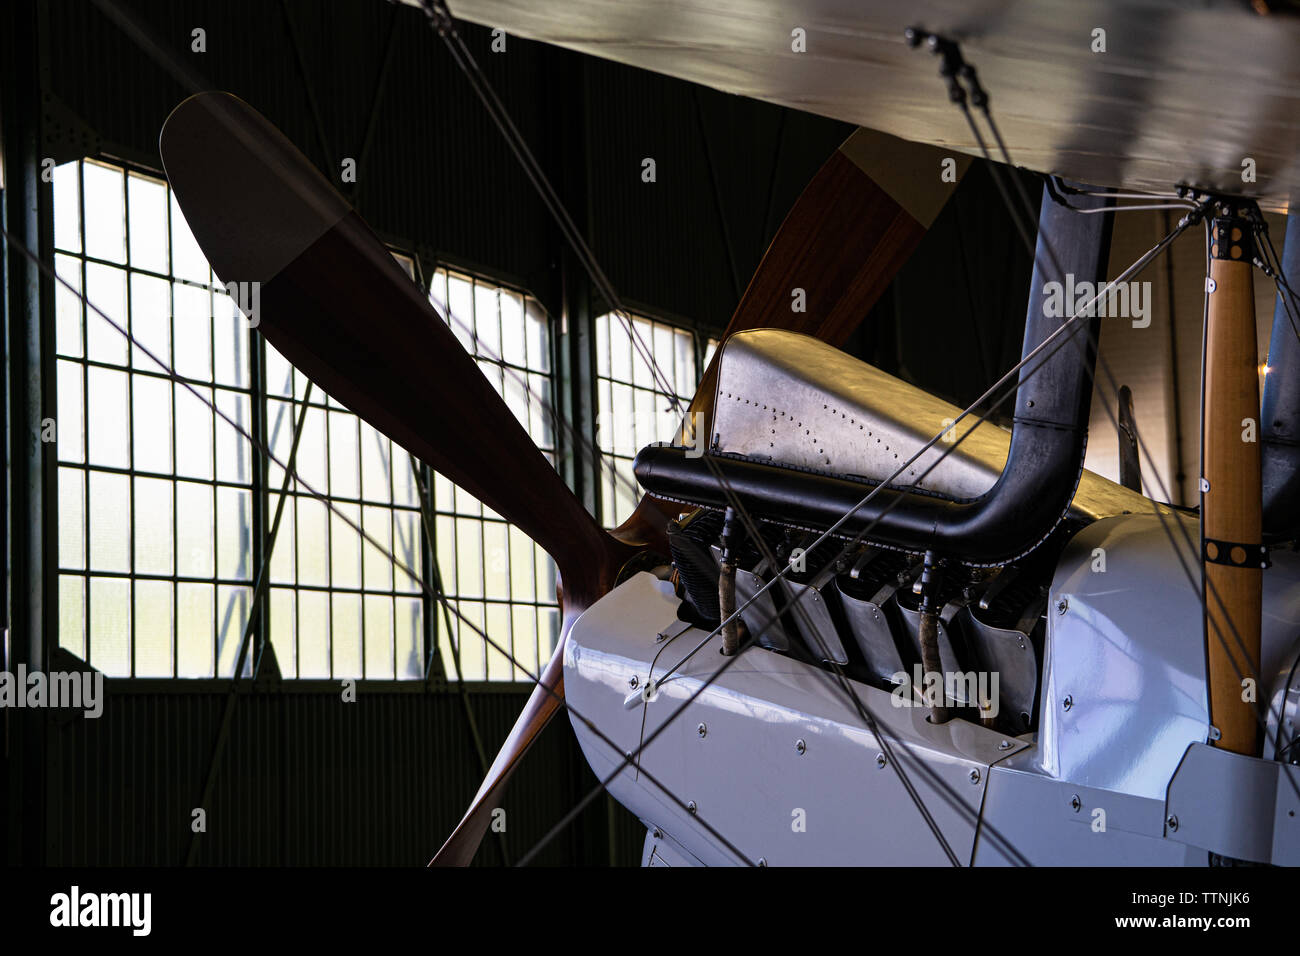 Historic bi-plane silhouette / rim-accesa all'interno di un hangar Foto Stock